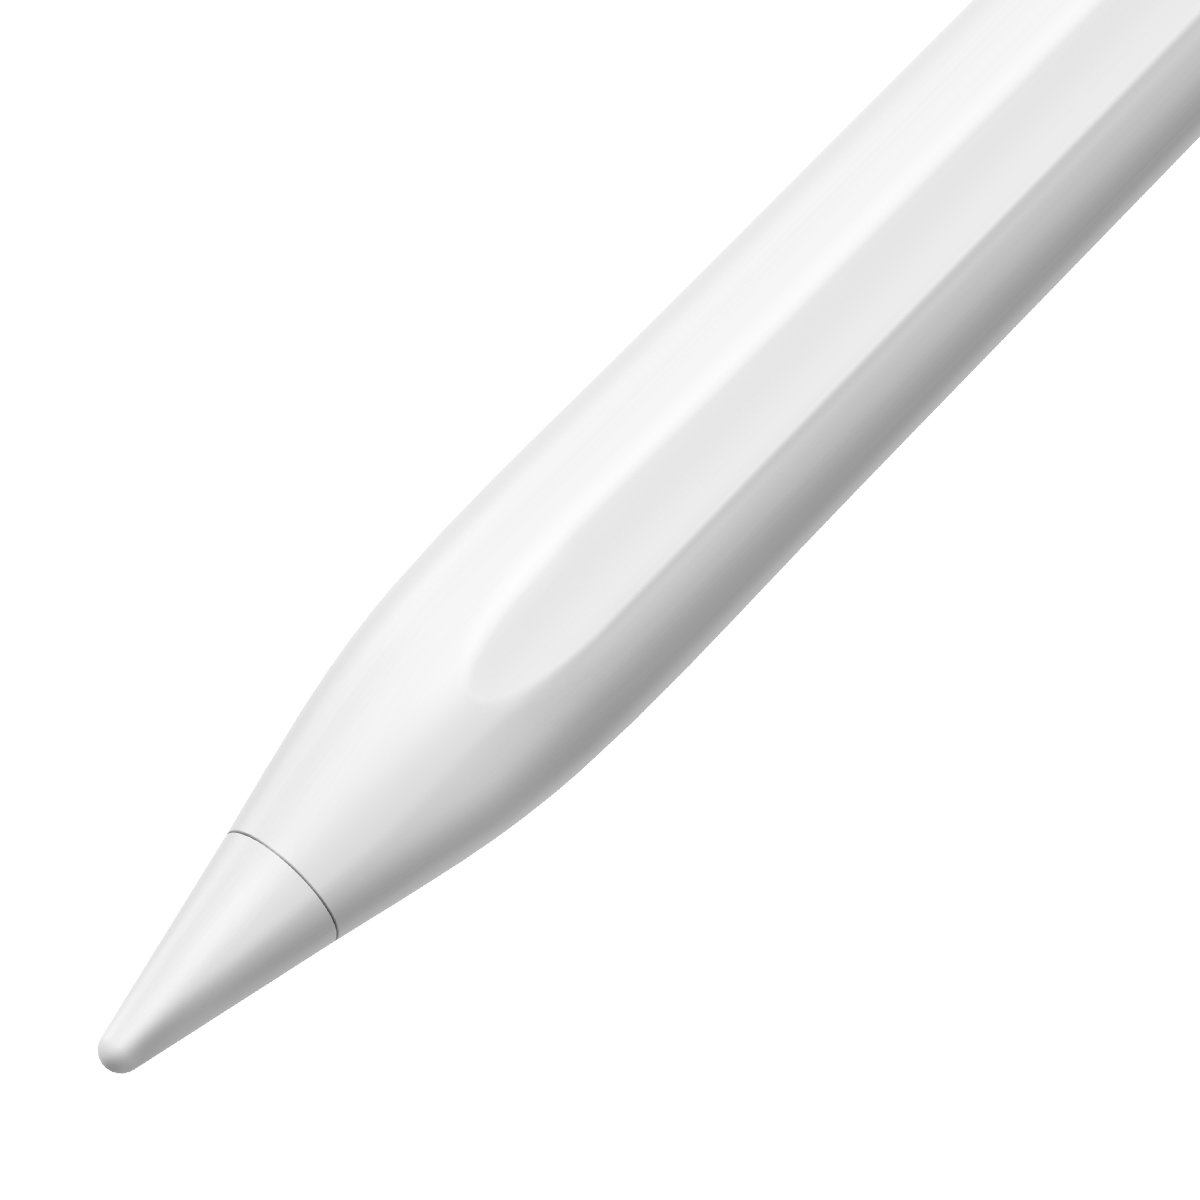 Baseus penna capacitiva stylus pen per iPad + cavo Type-C 0.3mt white SXBC000102